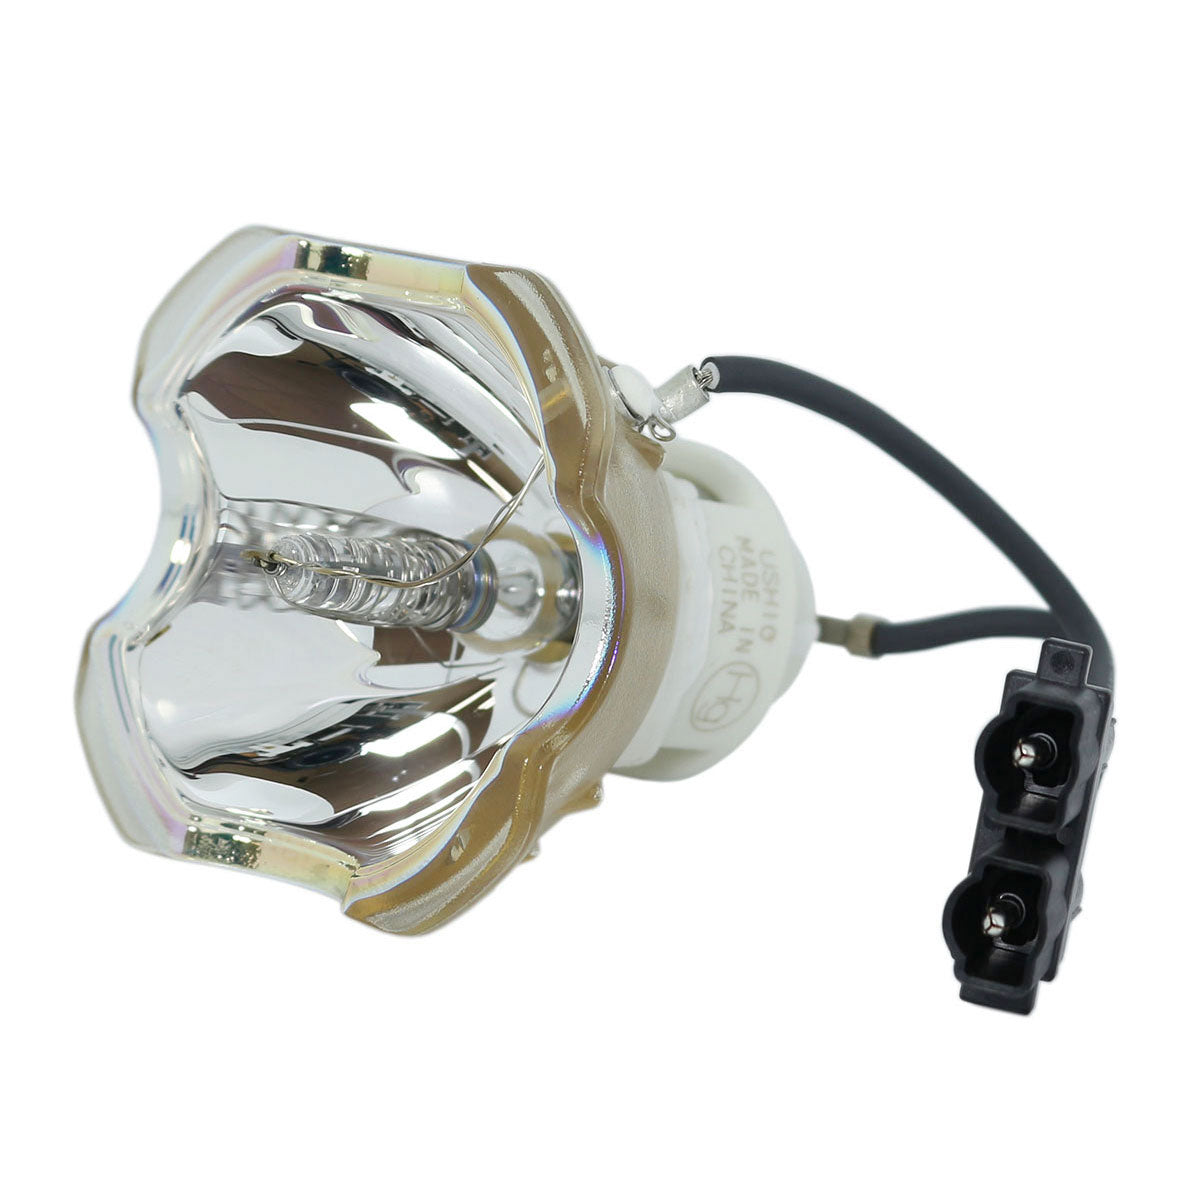 3M 78-6969-9893-5 Ushio Projector Bare Lamp